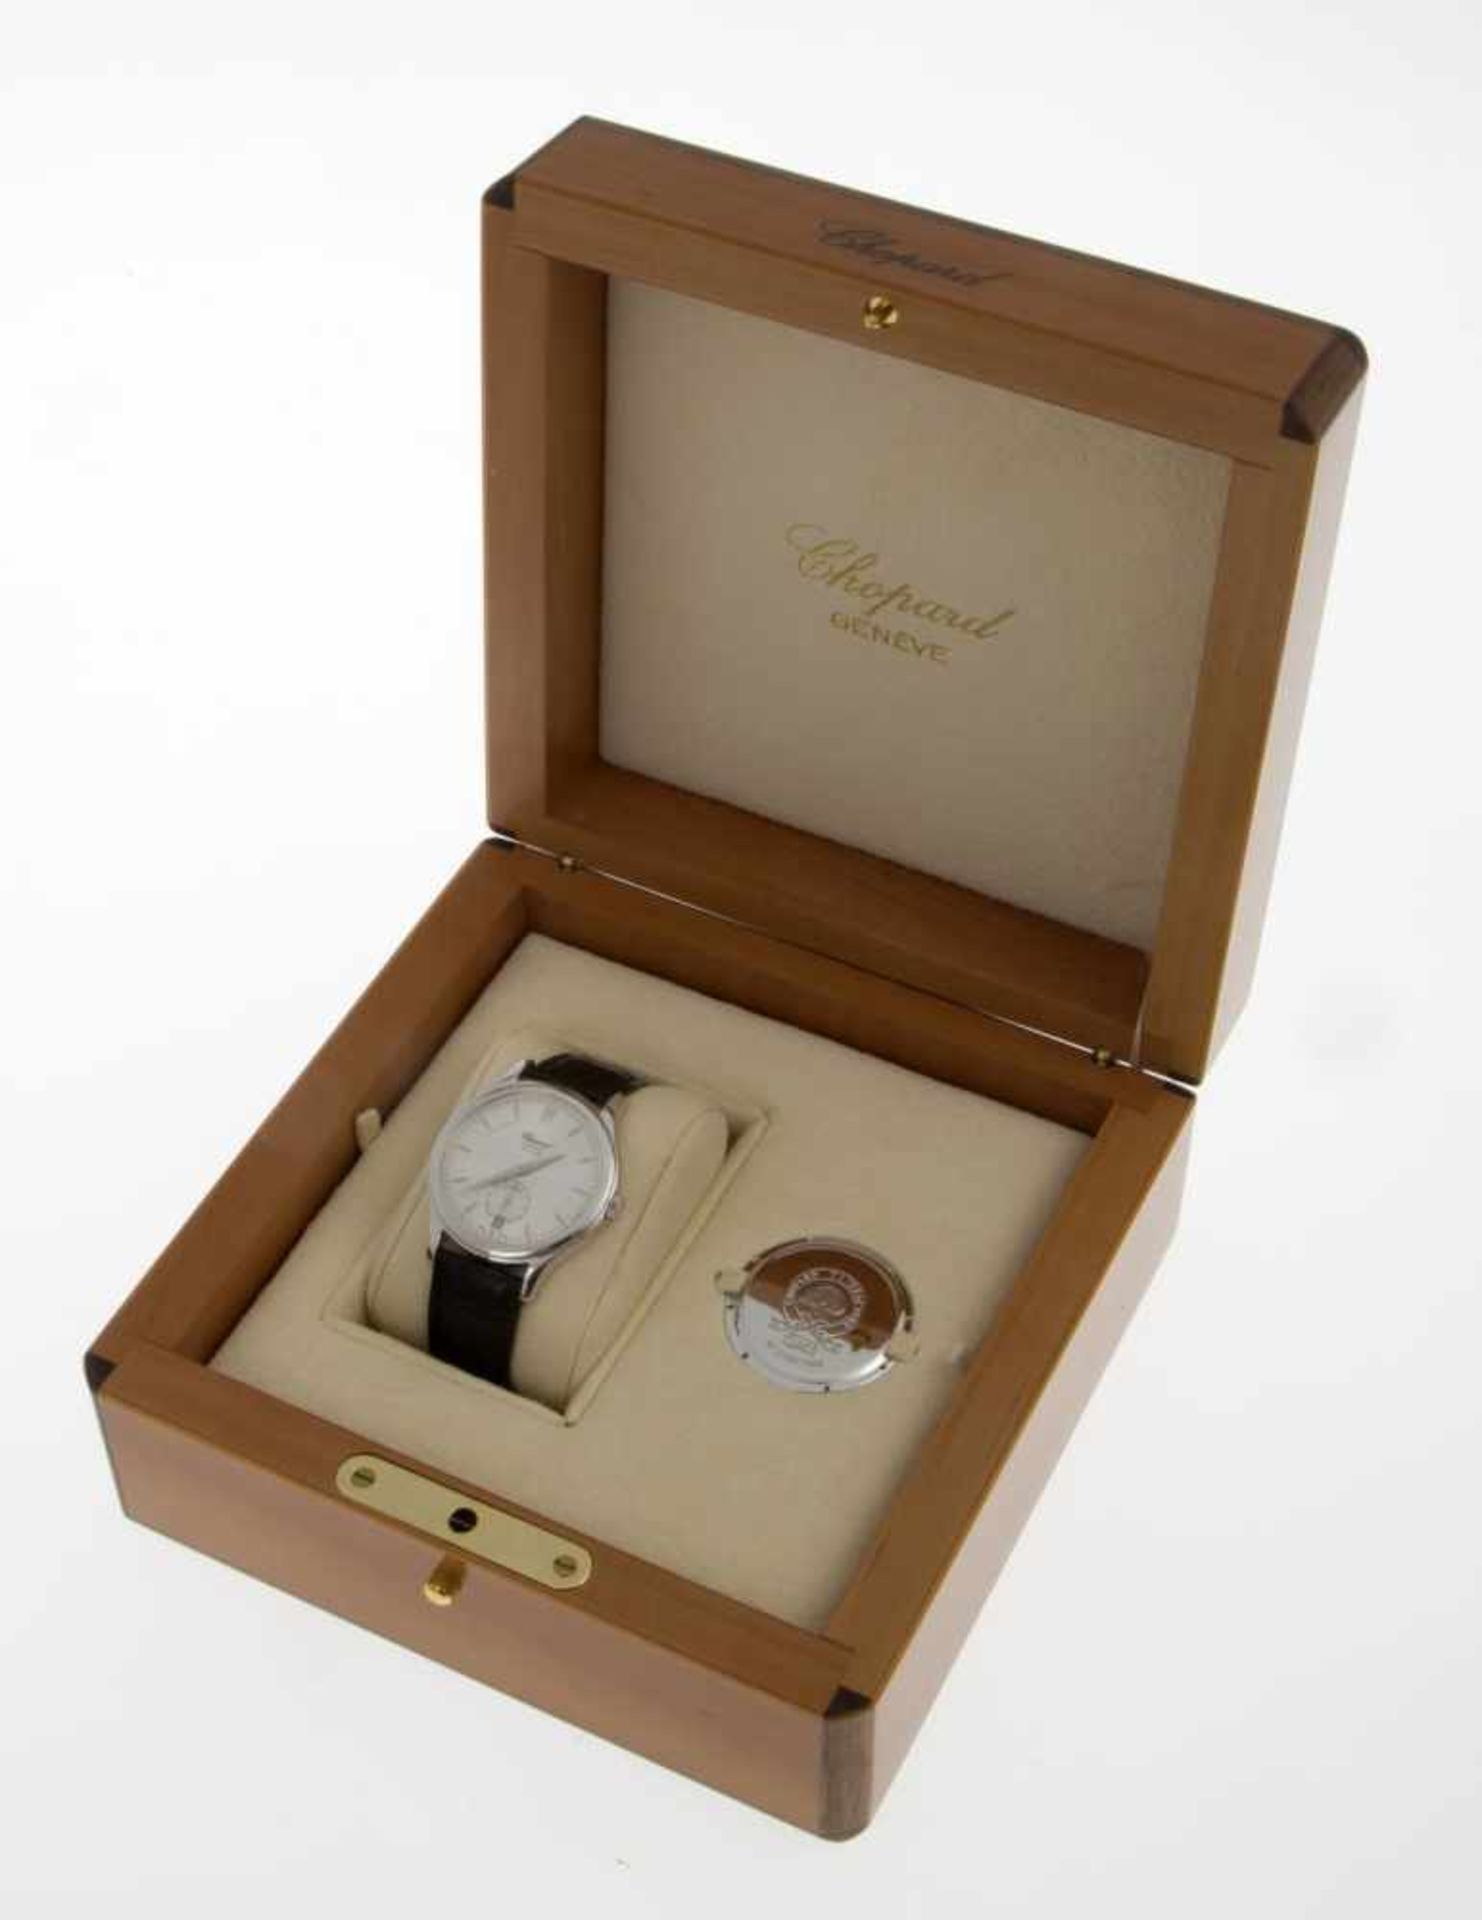 Feine automatische Chopard-Armbanduhr in limitierter AuflageGehäuse und Dornschließe an Orig.- - Bild 4 aus 4